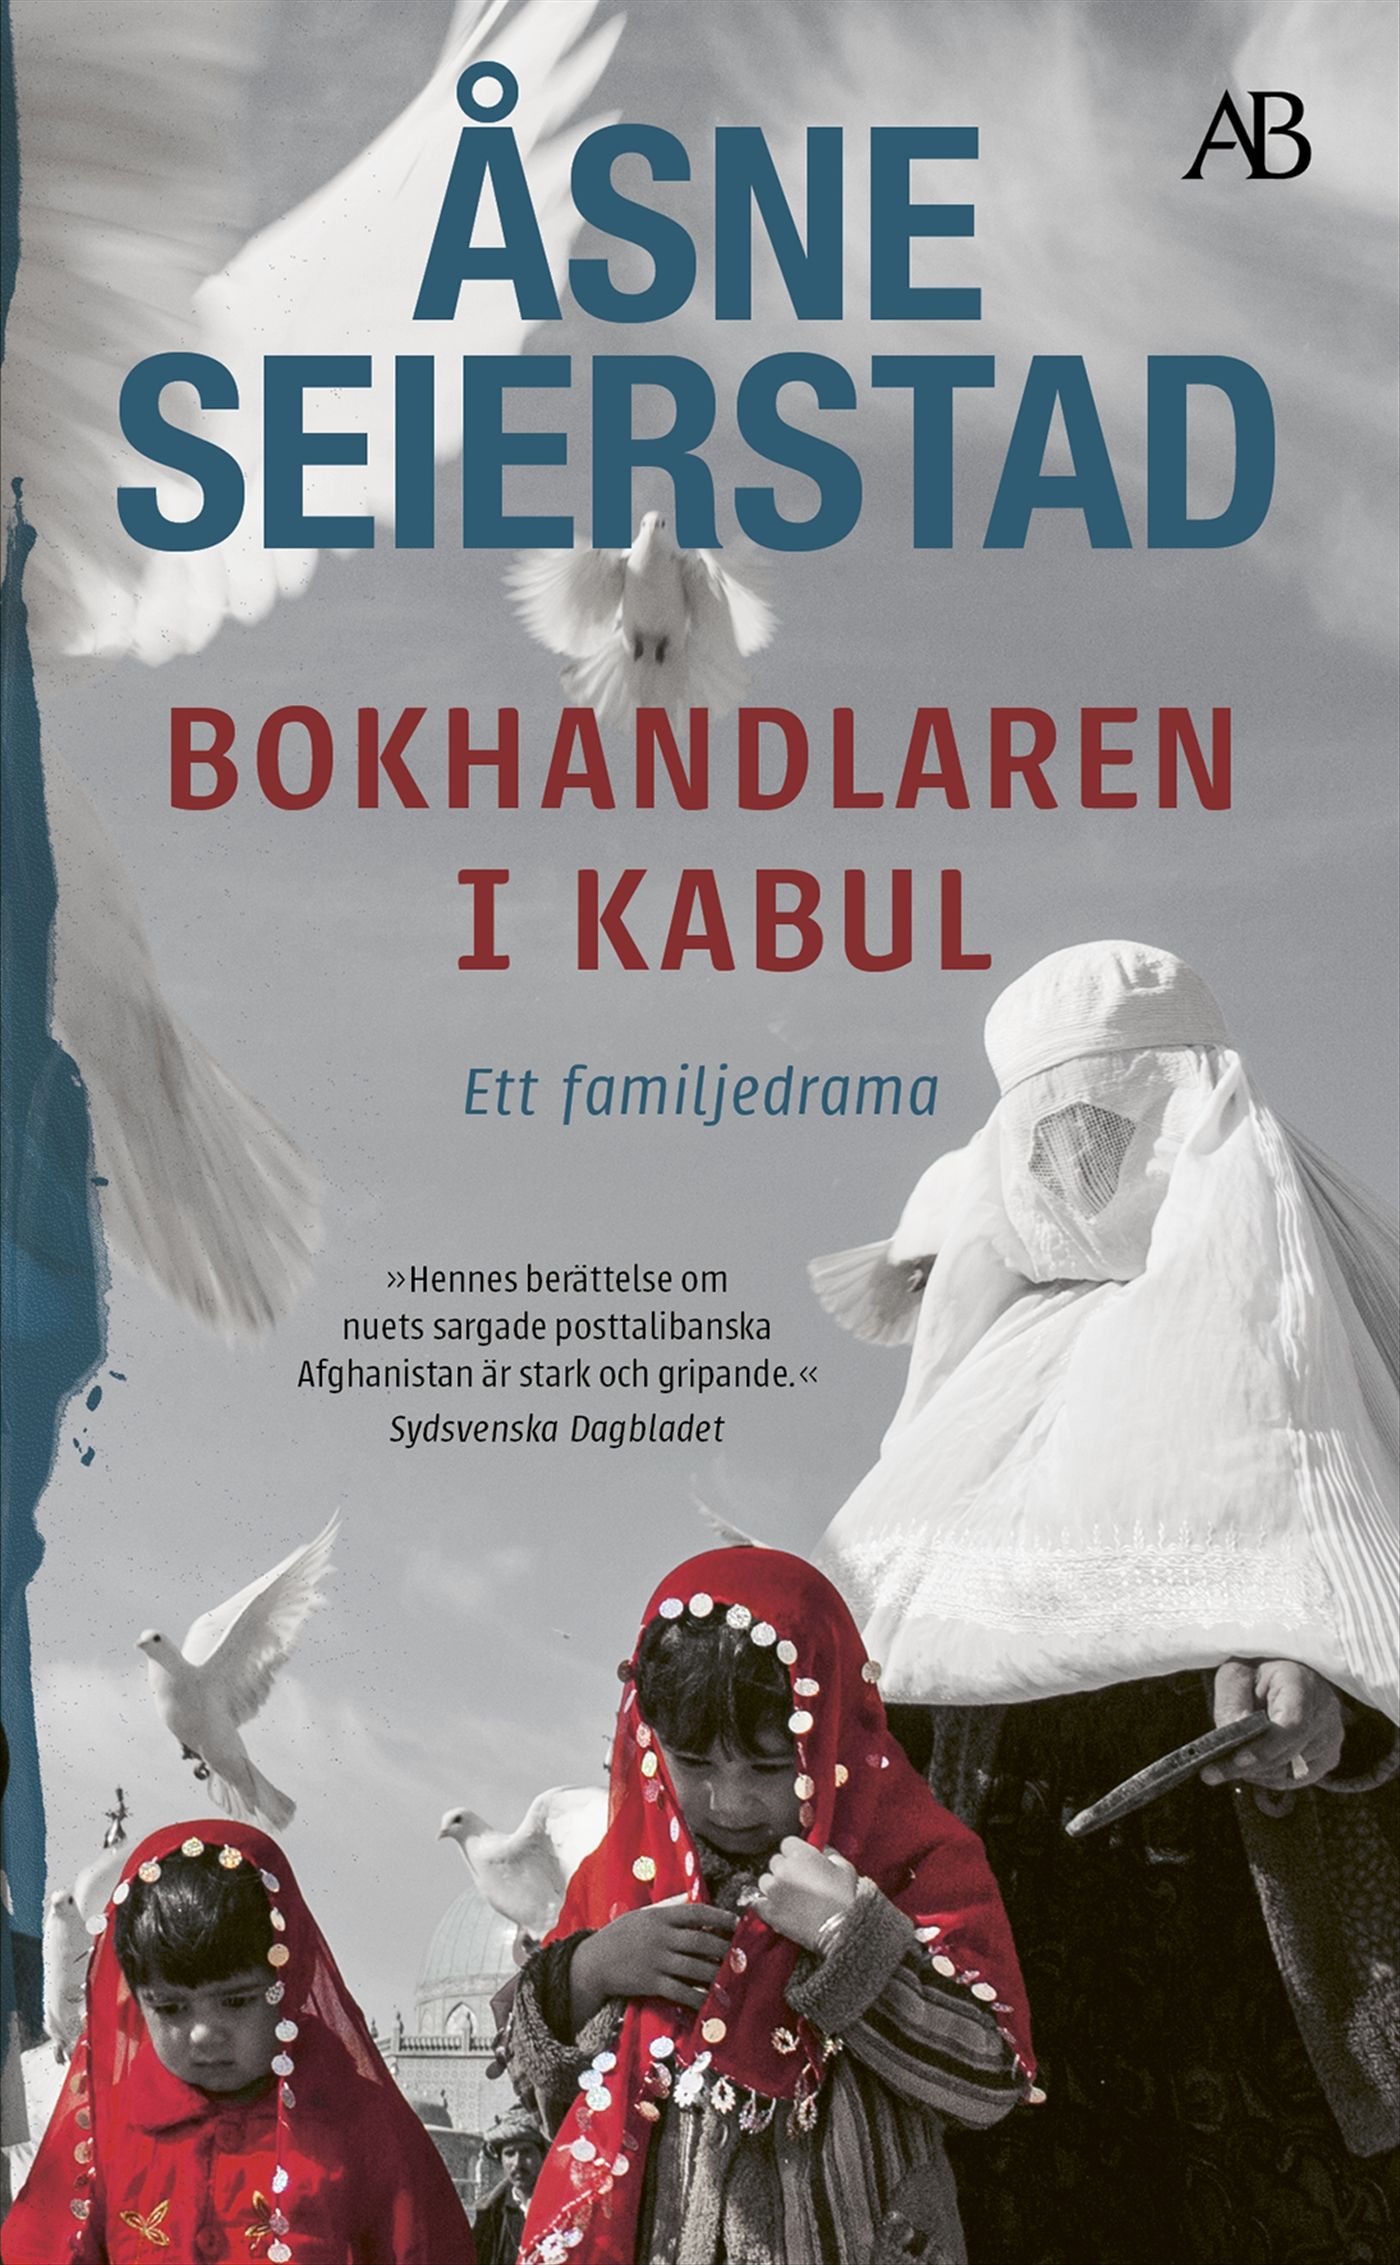 Bokhandlaren i Kabul, e-bog af Åsne Seierstad